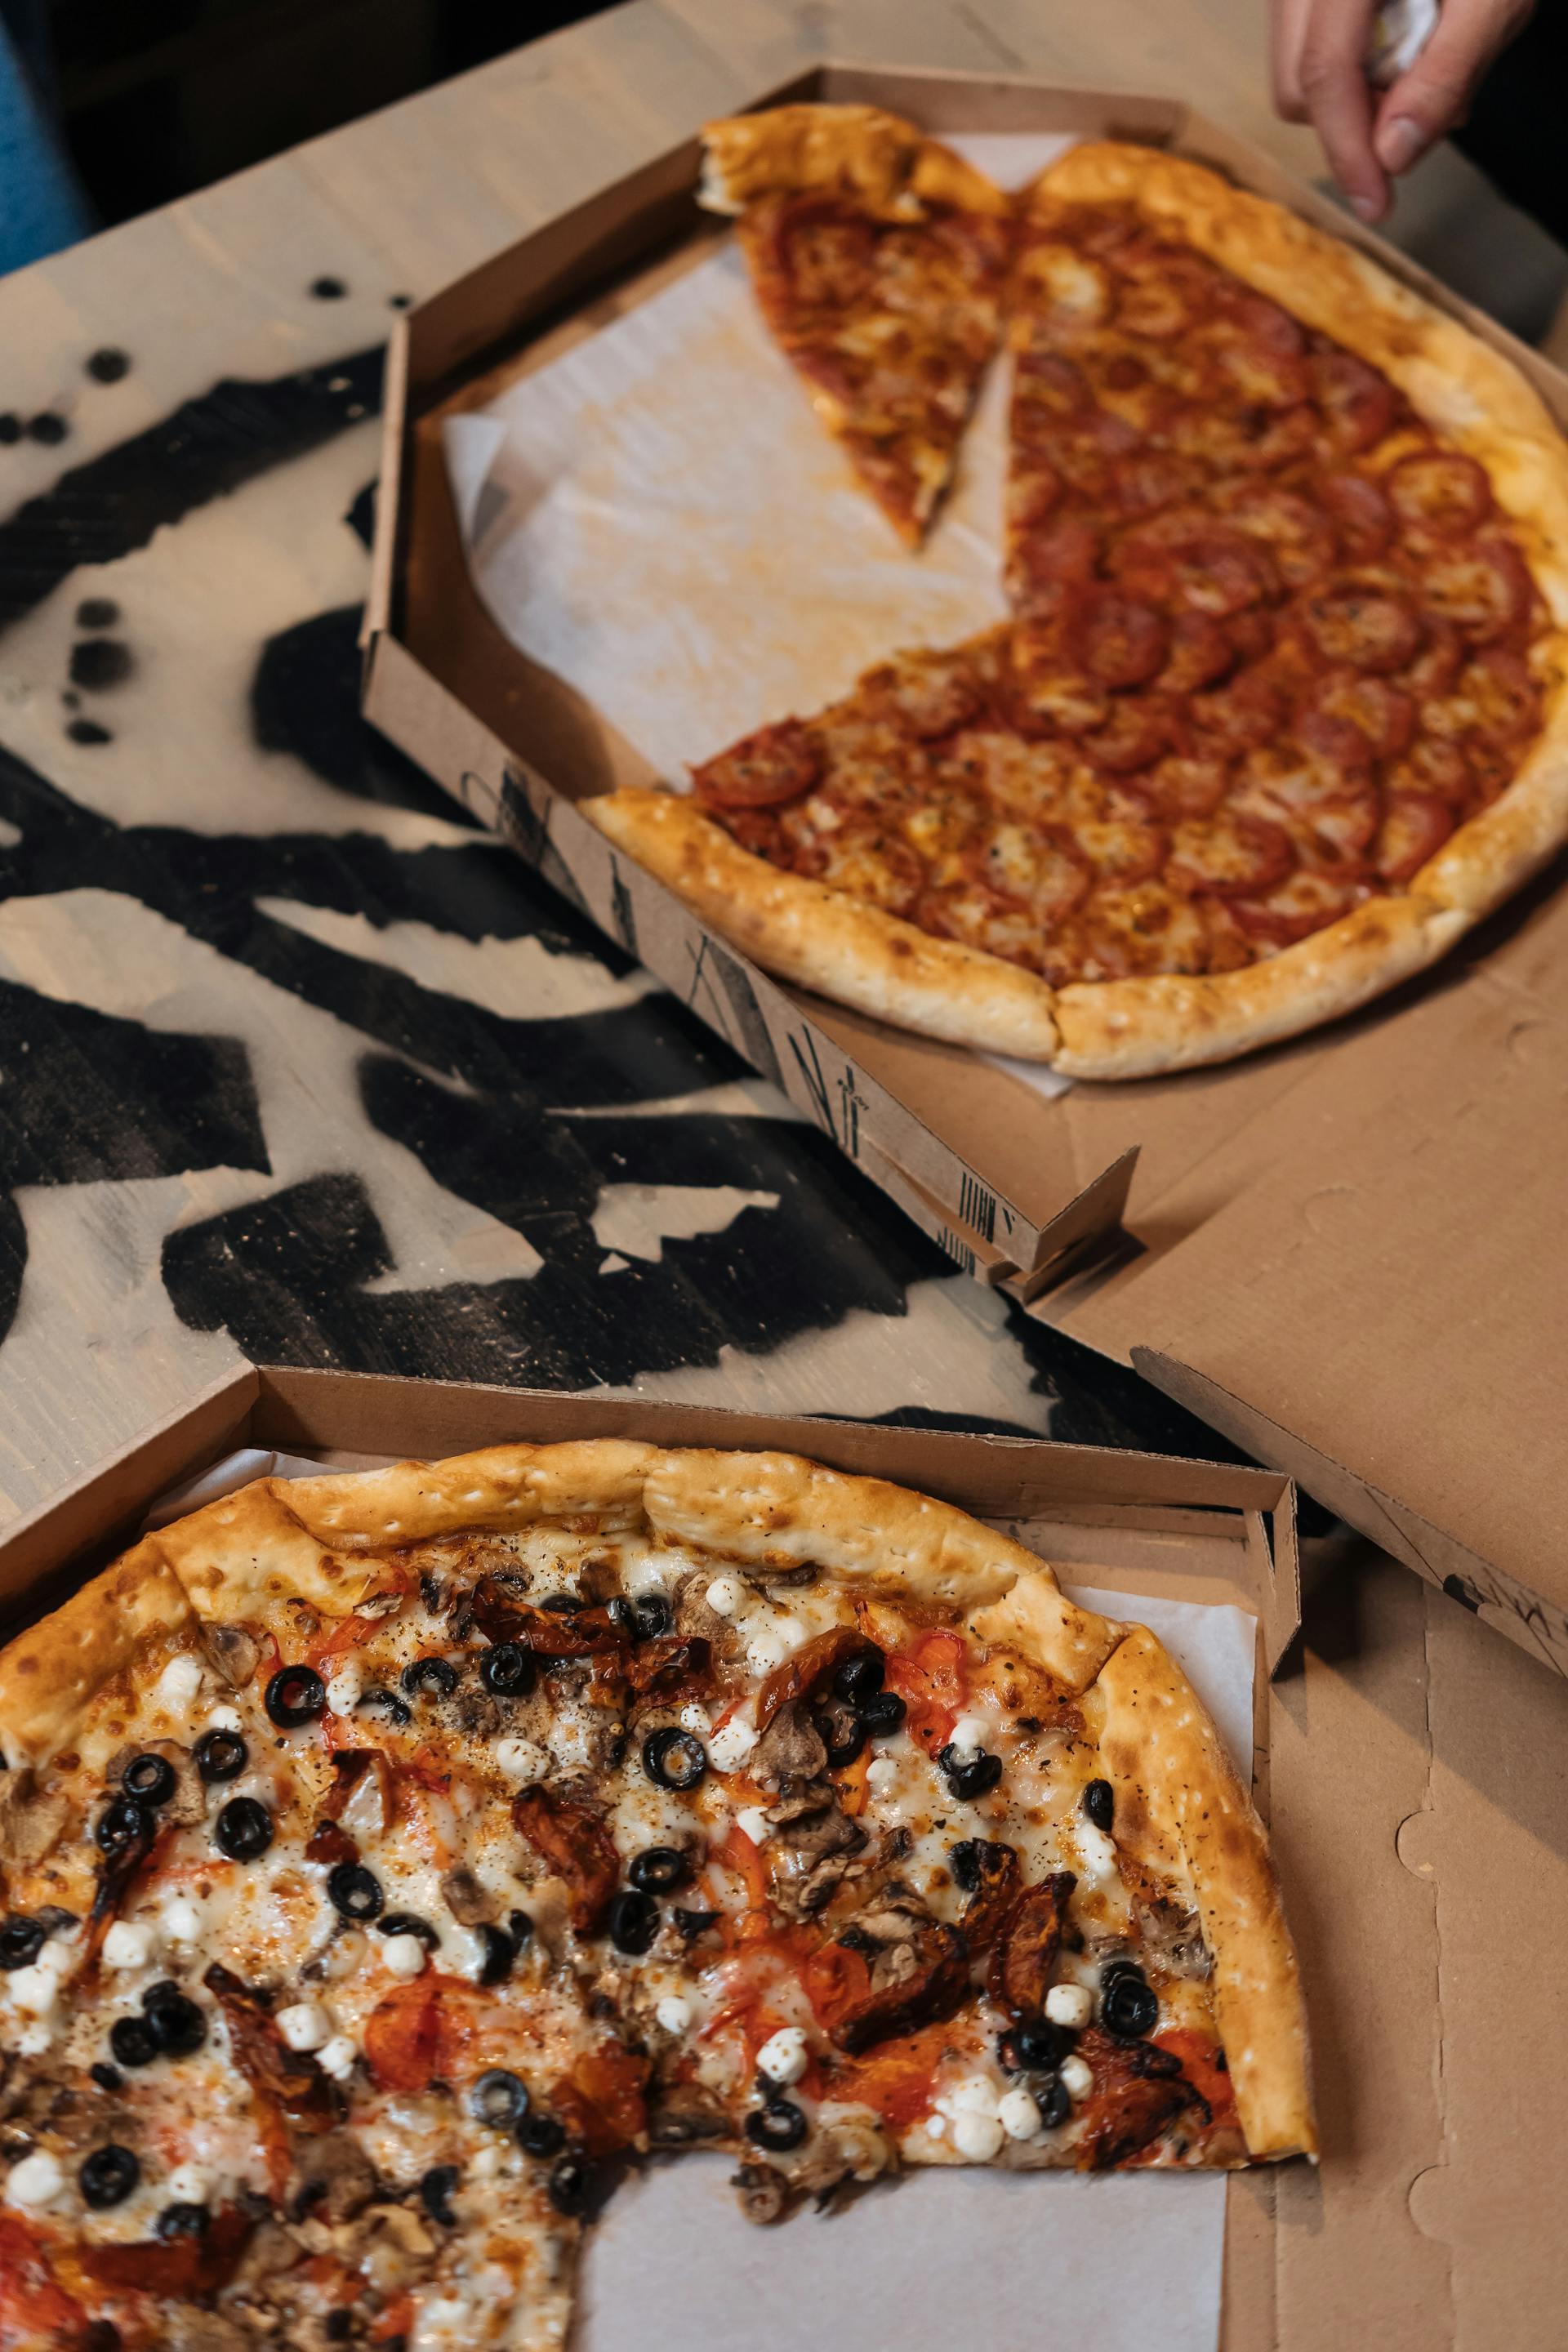 Pizzakartons auf einem Tisch | Quelle: Pexels